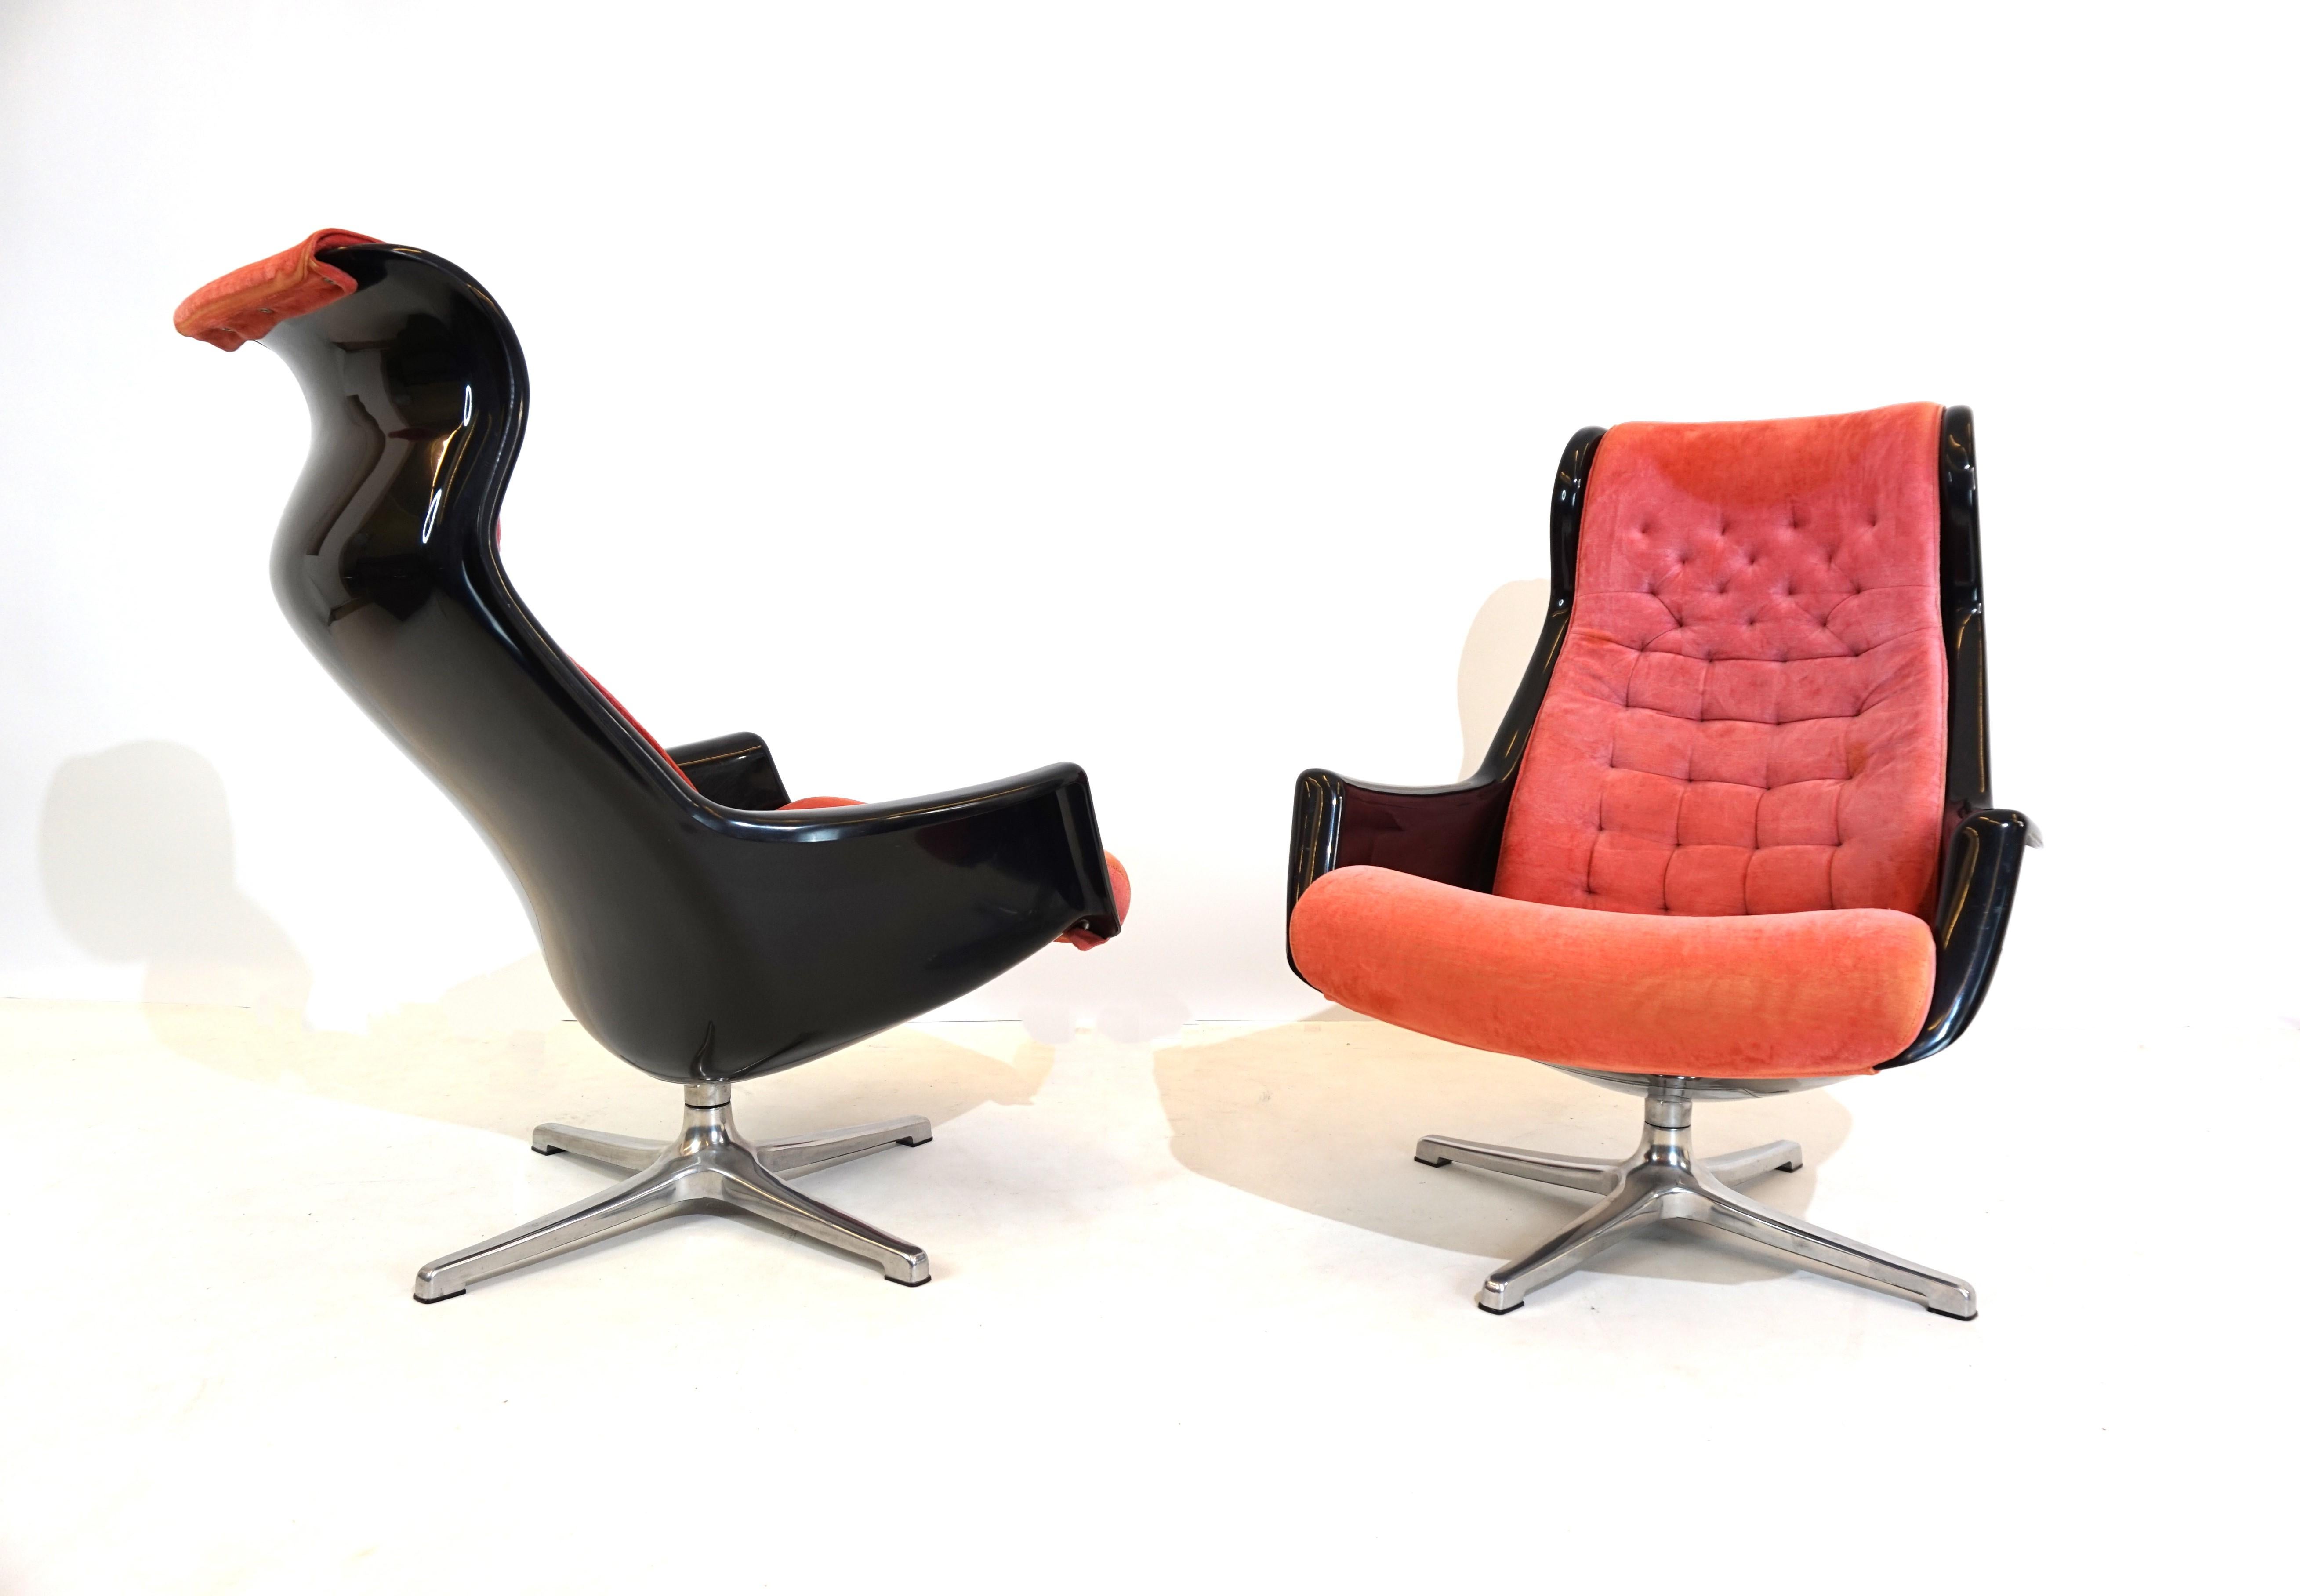 Deux fauteuils Galaxy dans une combinaison de couleurs fantastique d'acrylique noir et de rembourrage rose. Les coques en plastique des deux chaises, ainsi que les pieds en métal, sont en excellent état et tournent facilement. Le revêtement des